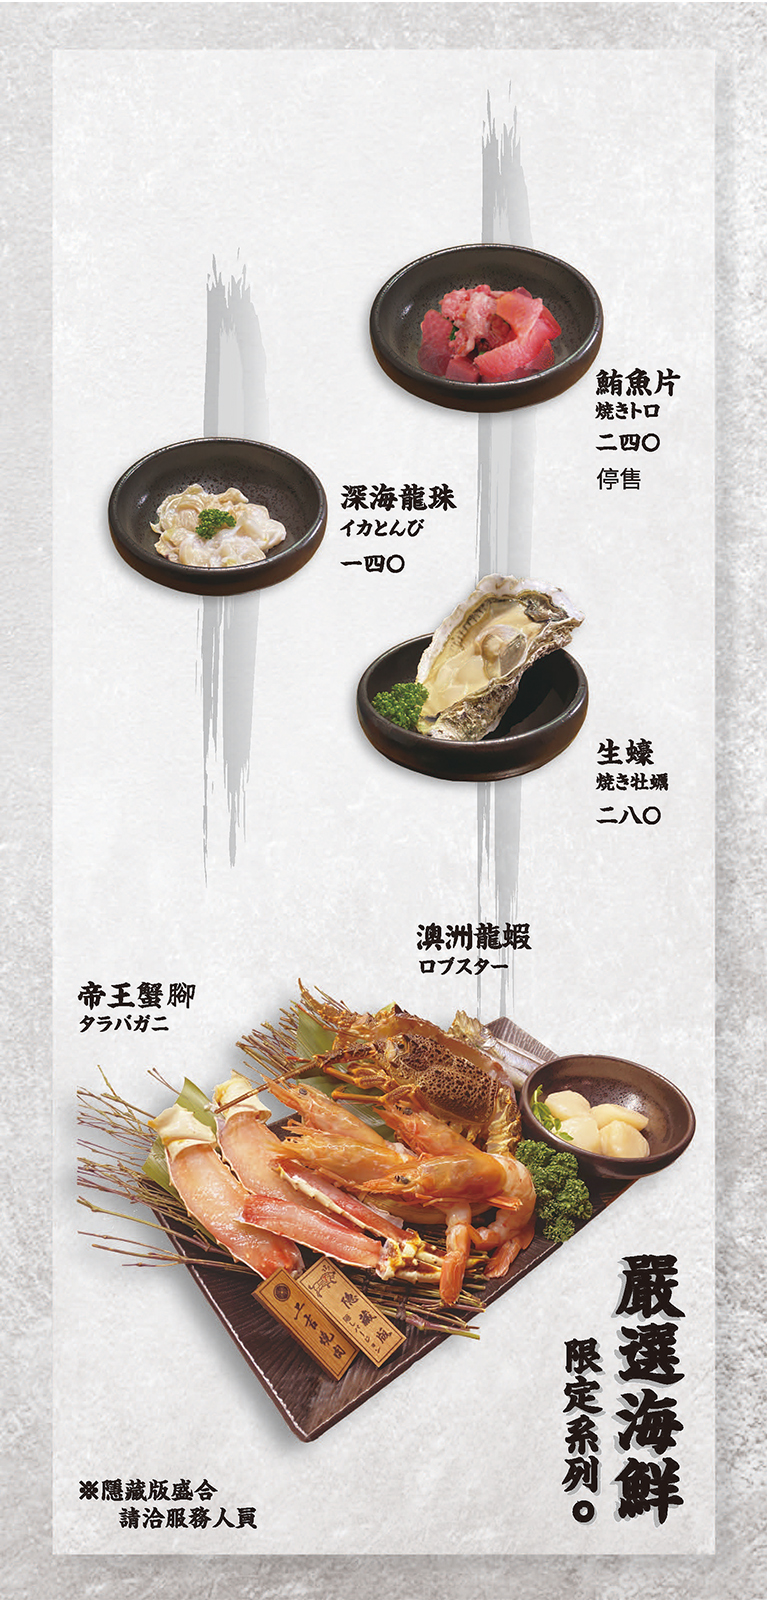 上吉燒肉-菜單-野菜、嚴選海鮮、海鮮